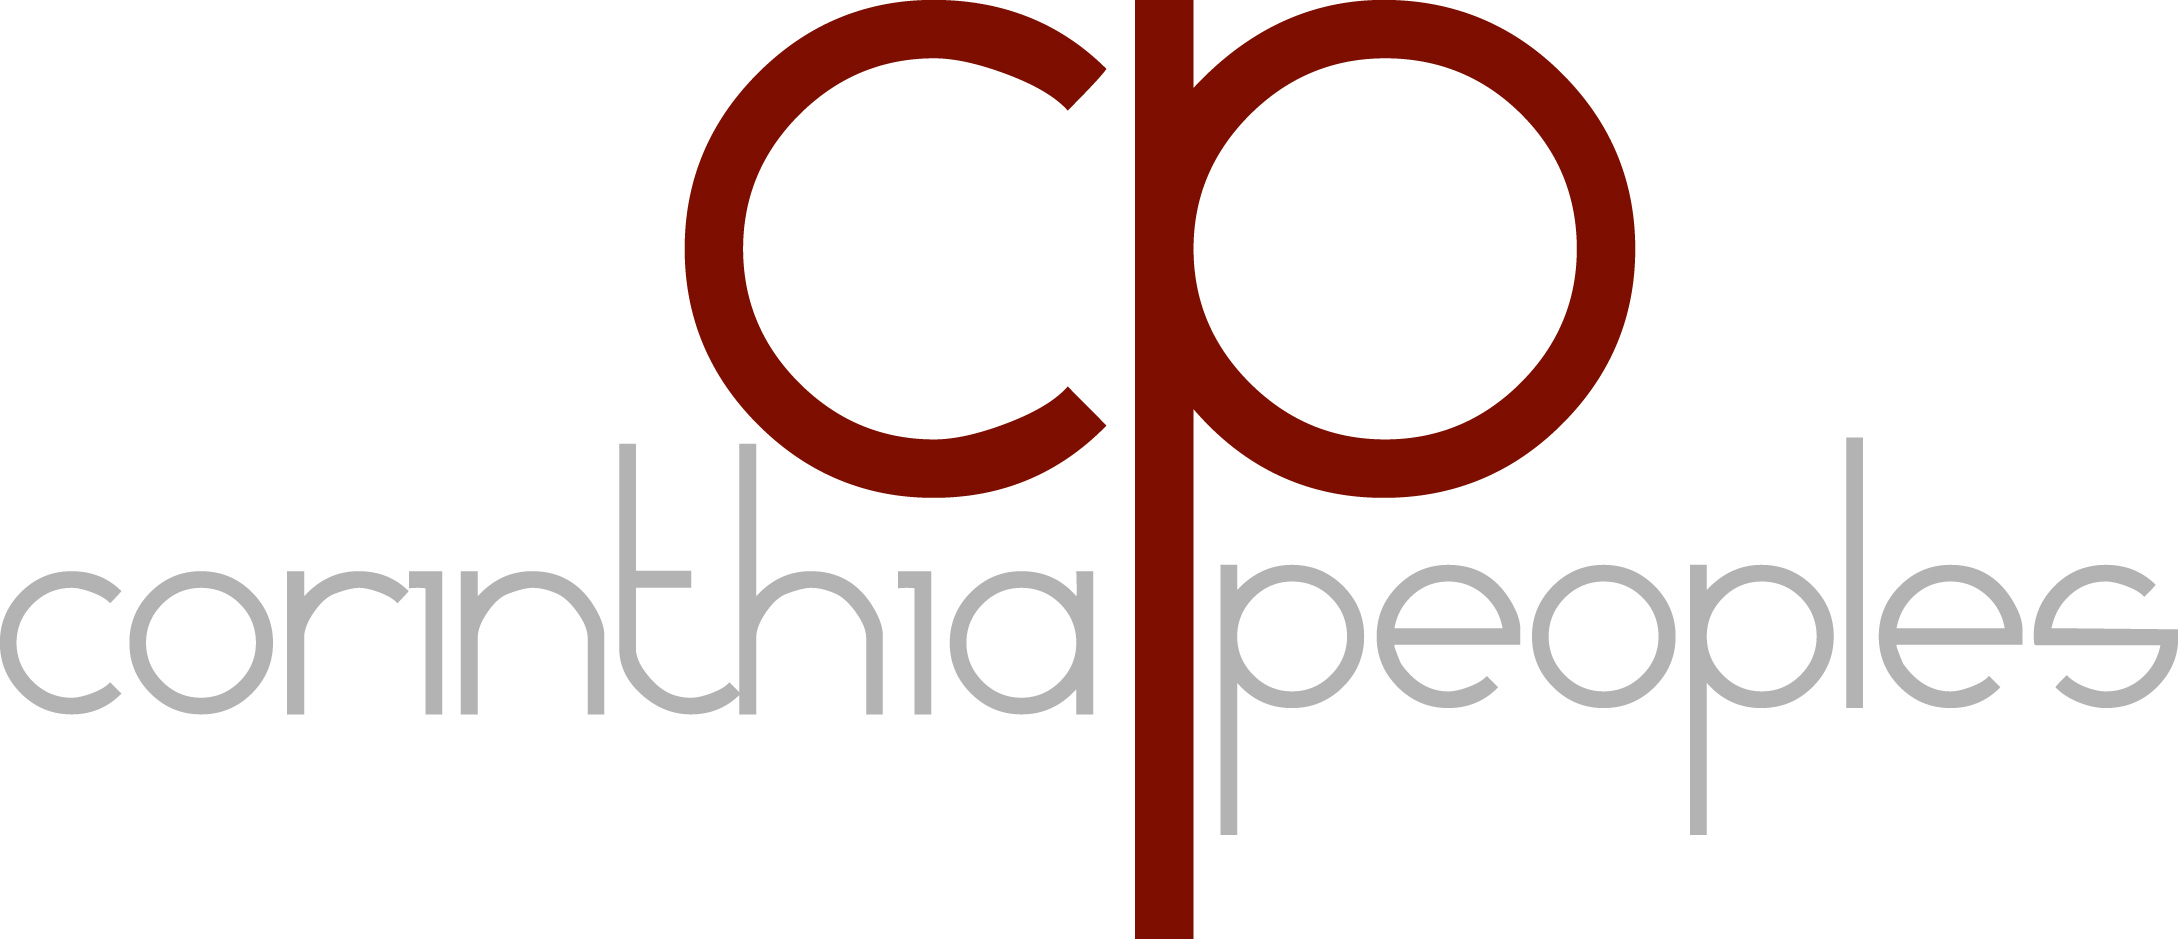 Corinthia Peoples Designs Logo